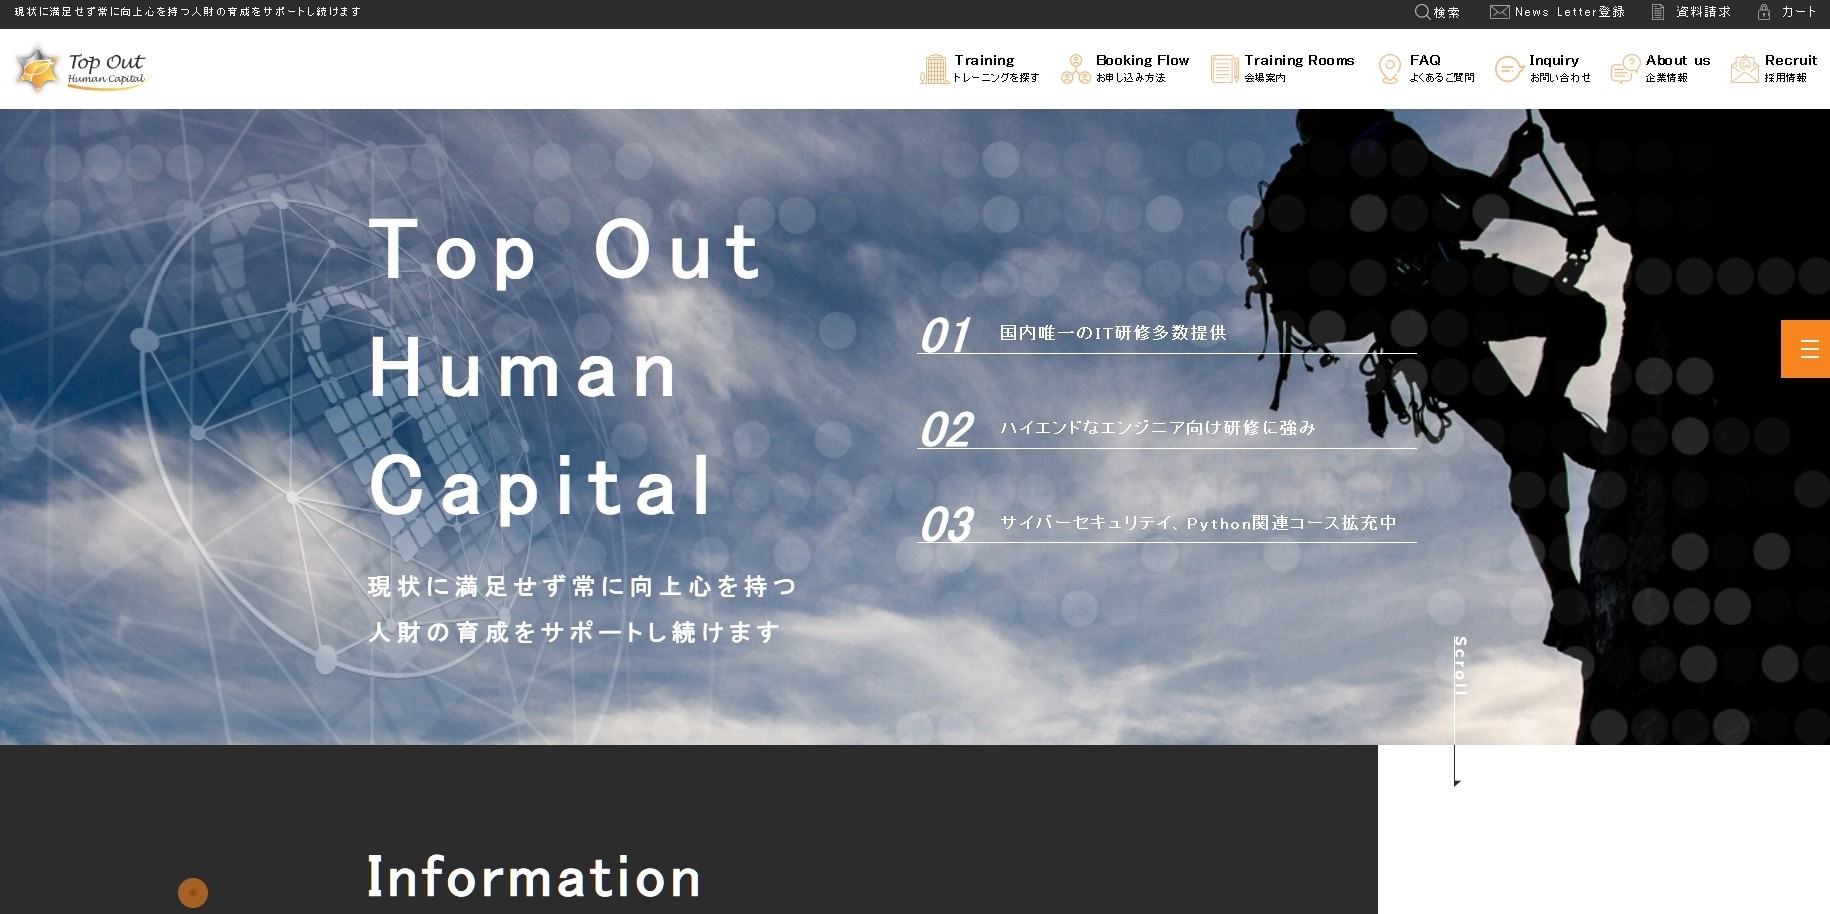 Top Out Human Capital株式会社のTop Out Human Capital株式会社サービス